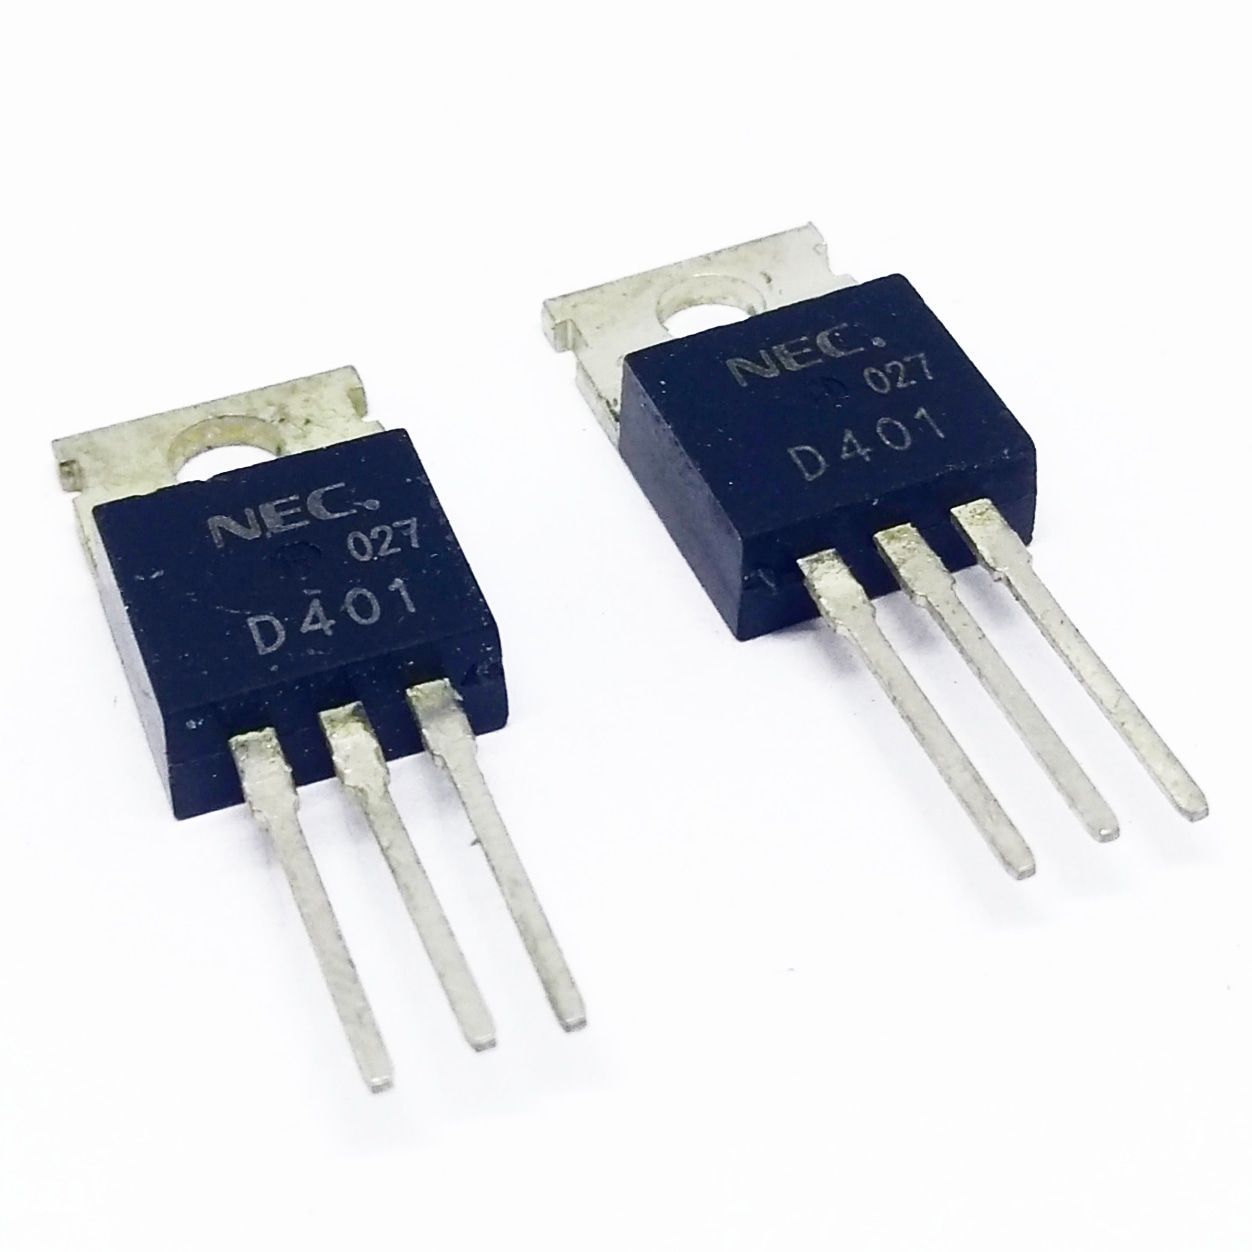 Kit 250 peças - Transistor 2SD401A TO-220 original - NEC